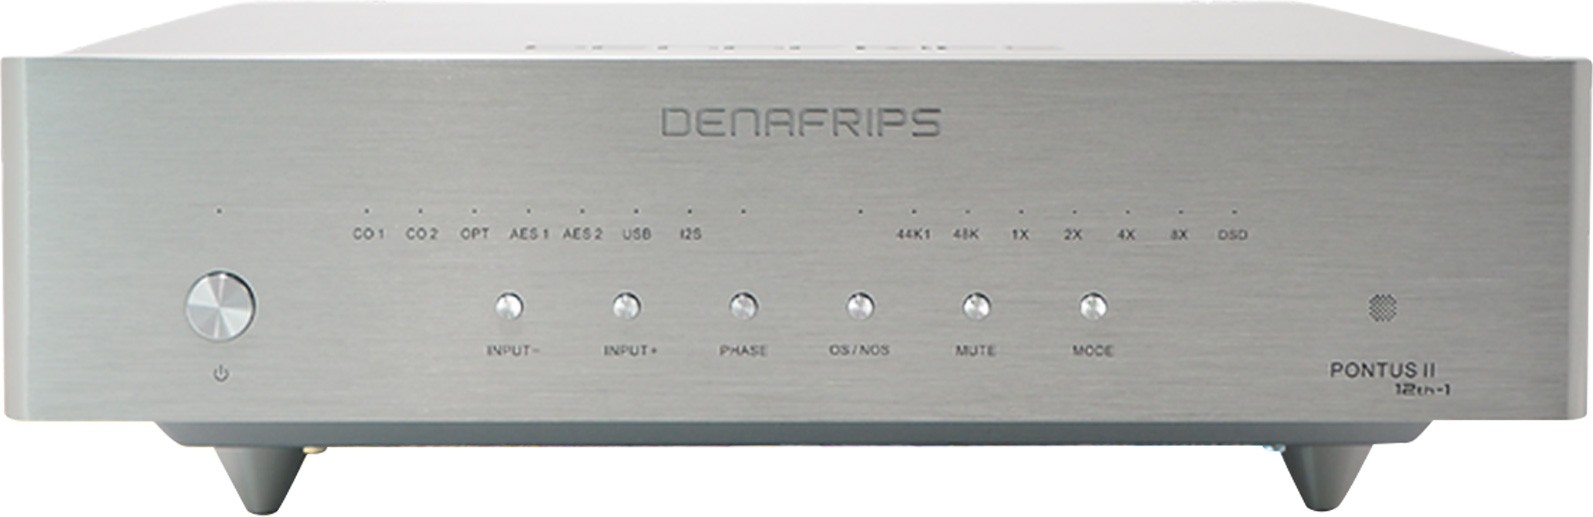 DENAFRIPS PONTUS II 12TH-1 DAC R2R NOS Symétrique 1536kHz DSD1024 Argent